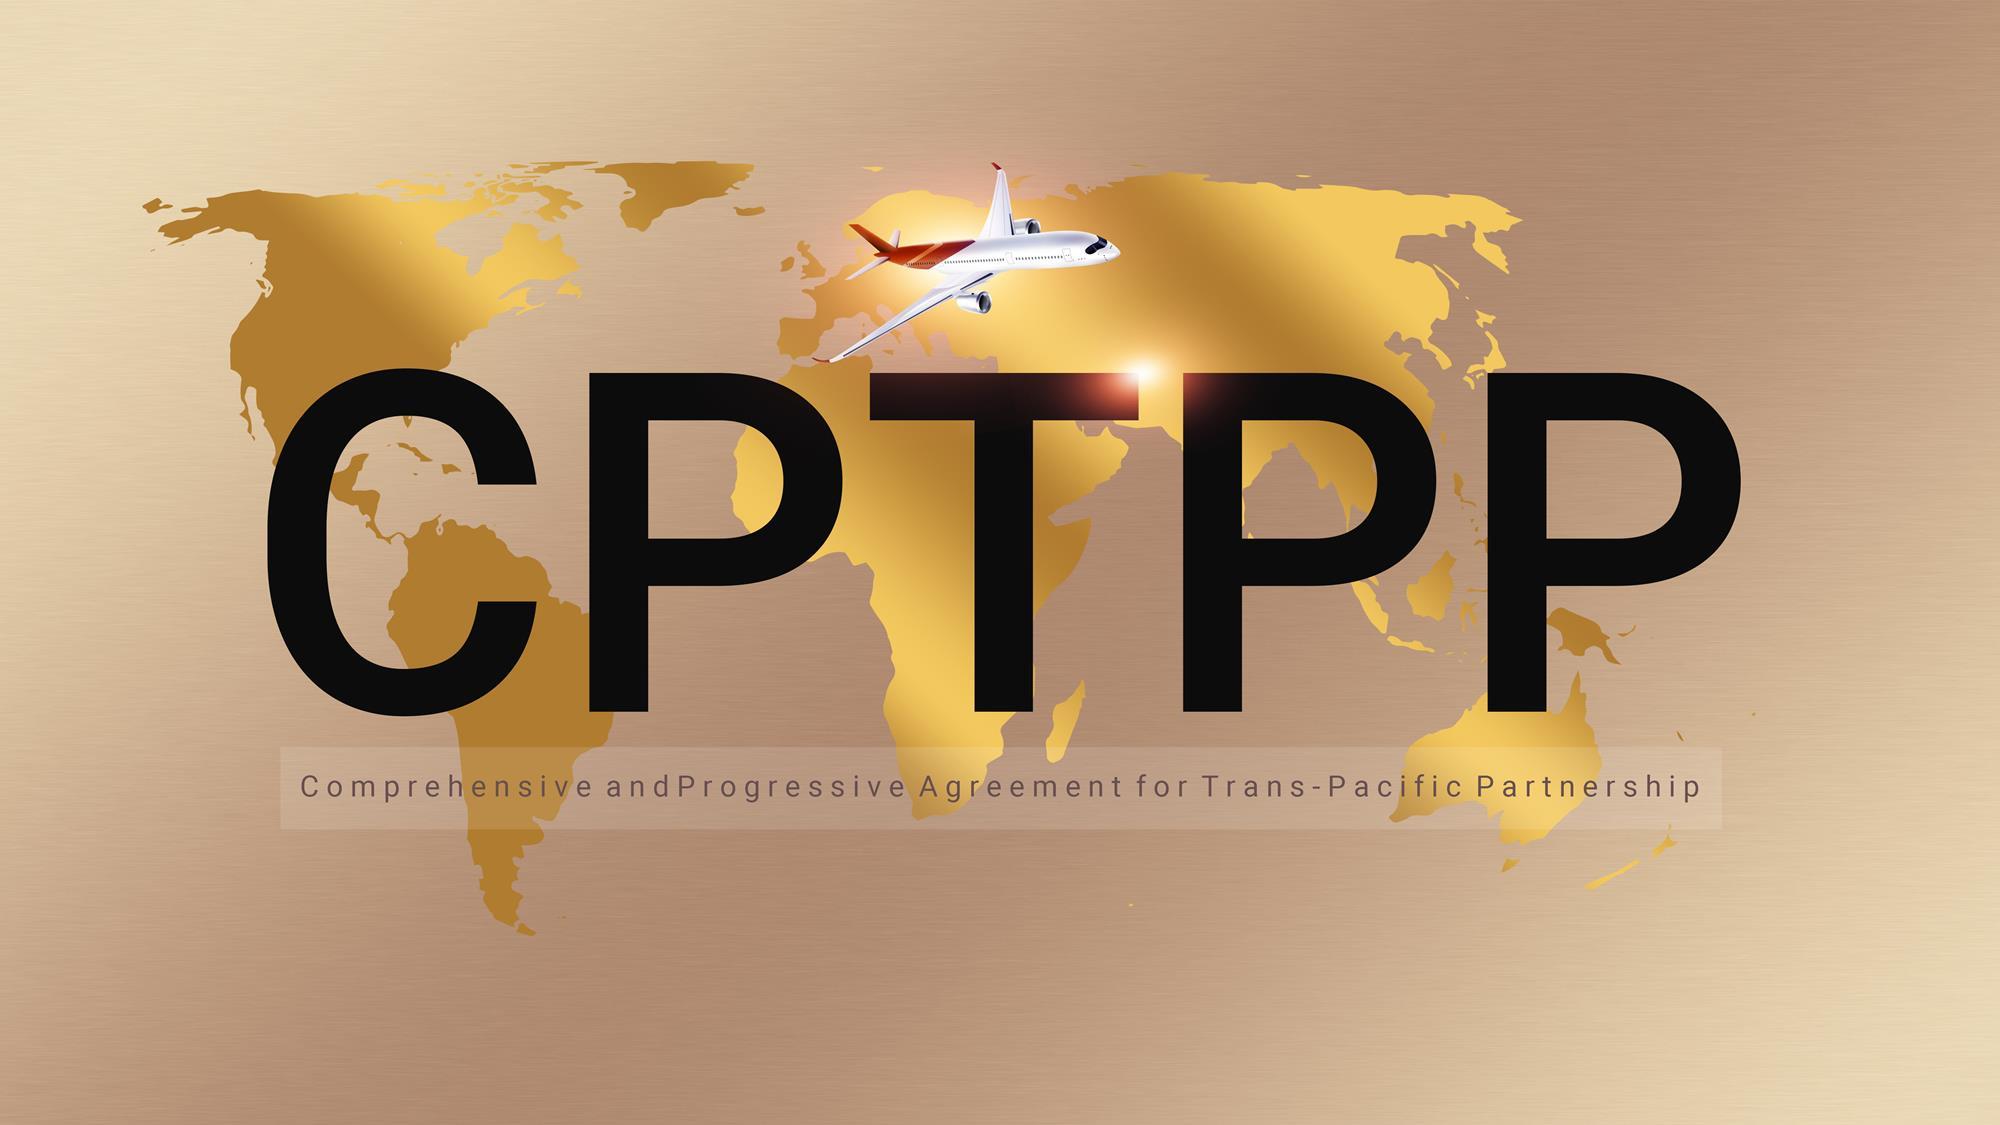 CPTTP kurzus